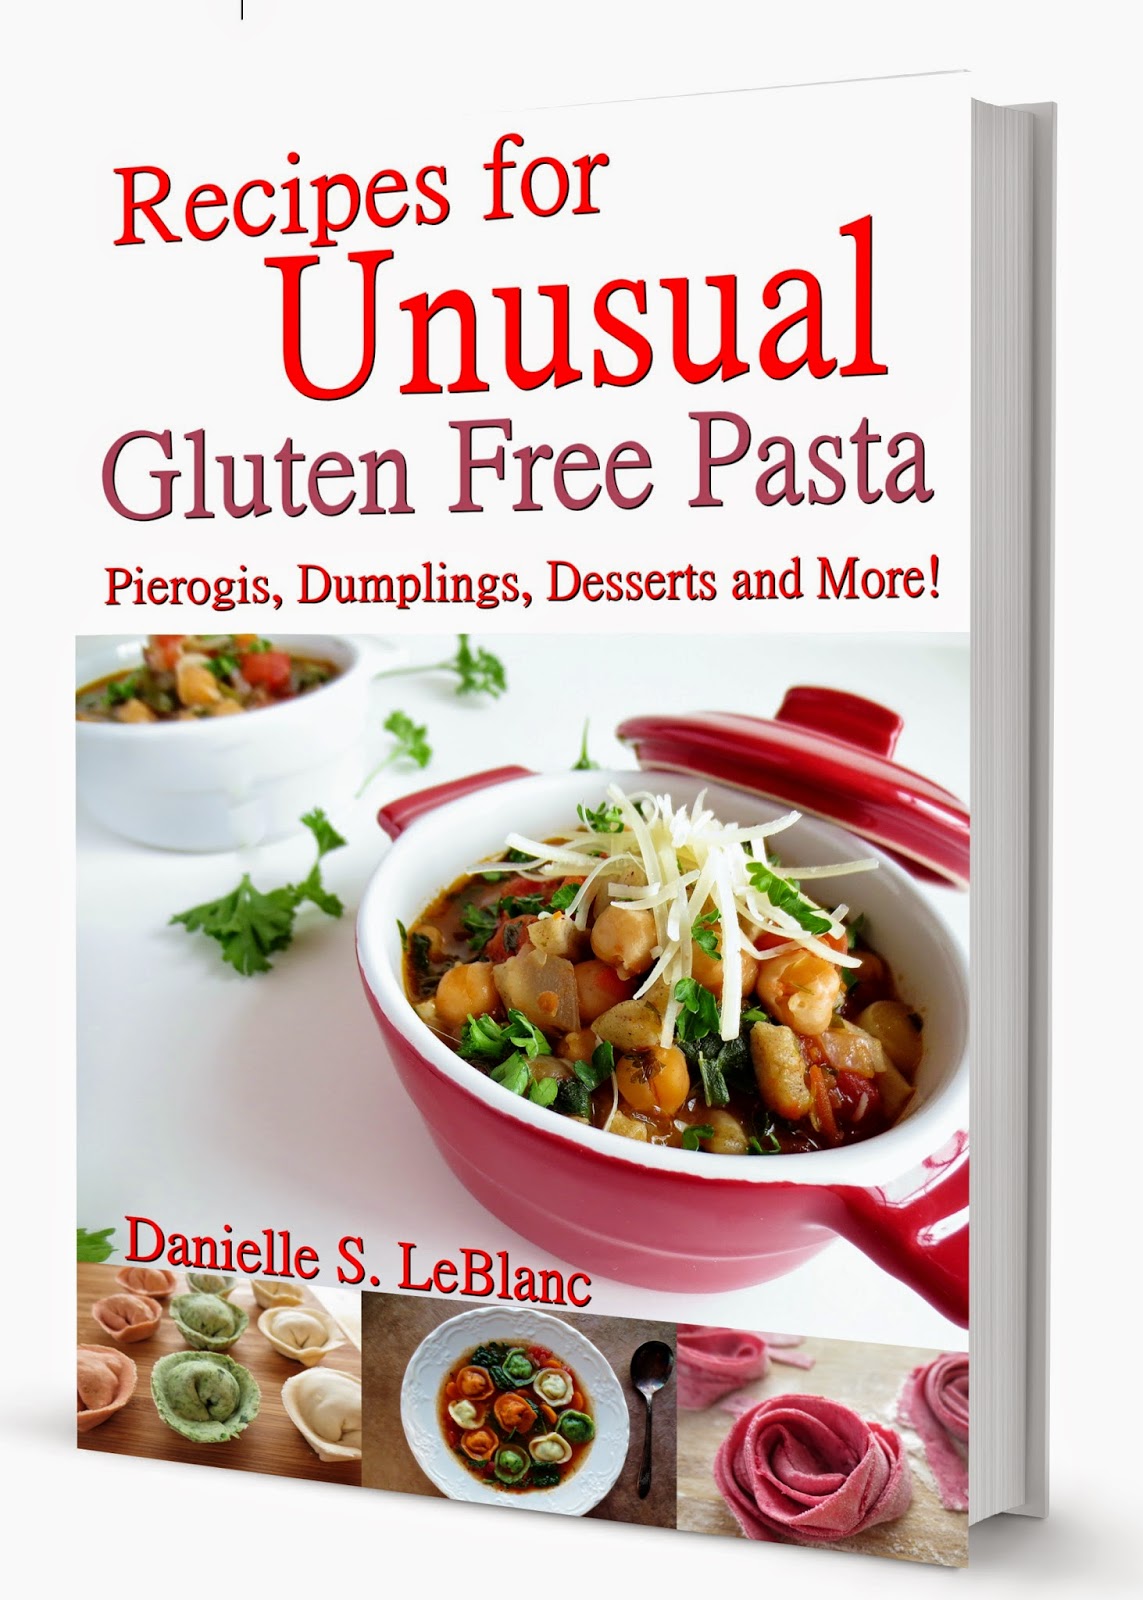 http://www.amazon.com/Recipes-Unusual-Gluten-Free-Pasta-ebook/dp/B00KOBSVDI/ref=sr_1_1?ie=UTF8&qid=1416539125&sr=8-1&keywords=recipes+for+unusual+gluten+free+pasta+pierogis+dumplings+desserts+and+more